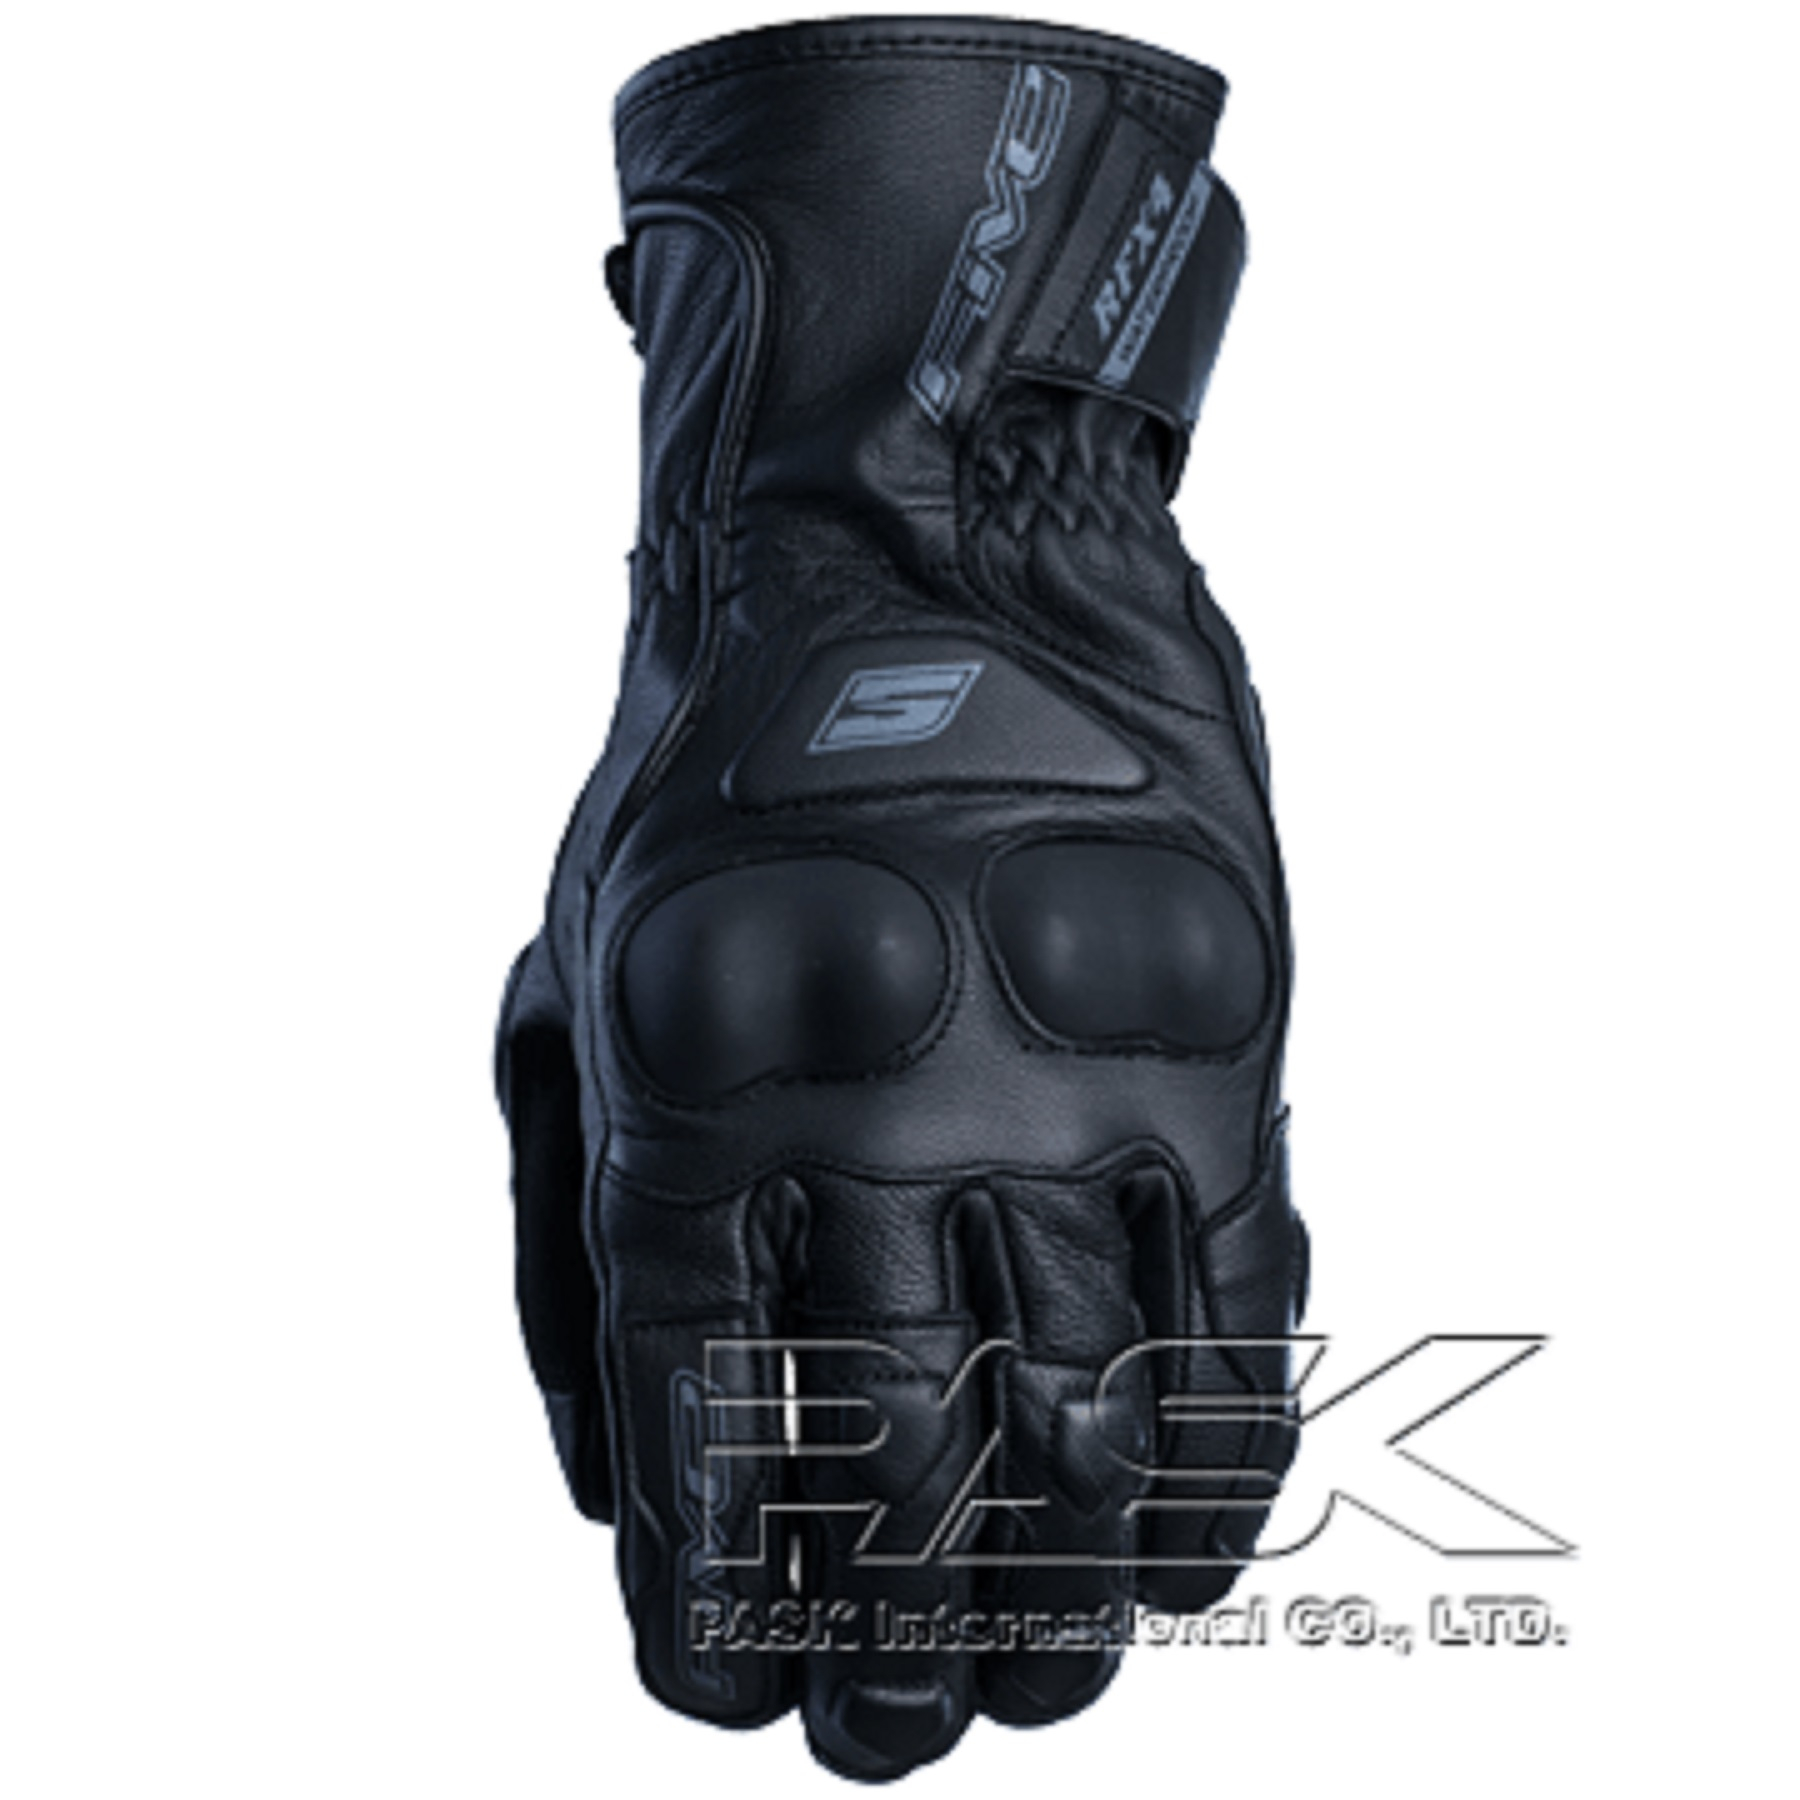 法國FIVE頂級摩托車手套advanced gloves Racing RFX4 WATERPROOF Black